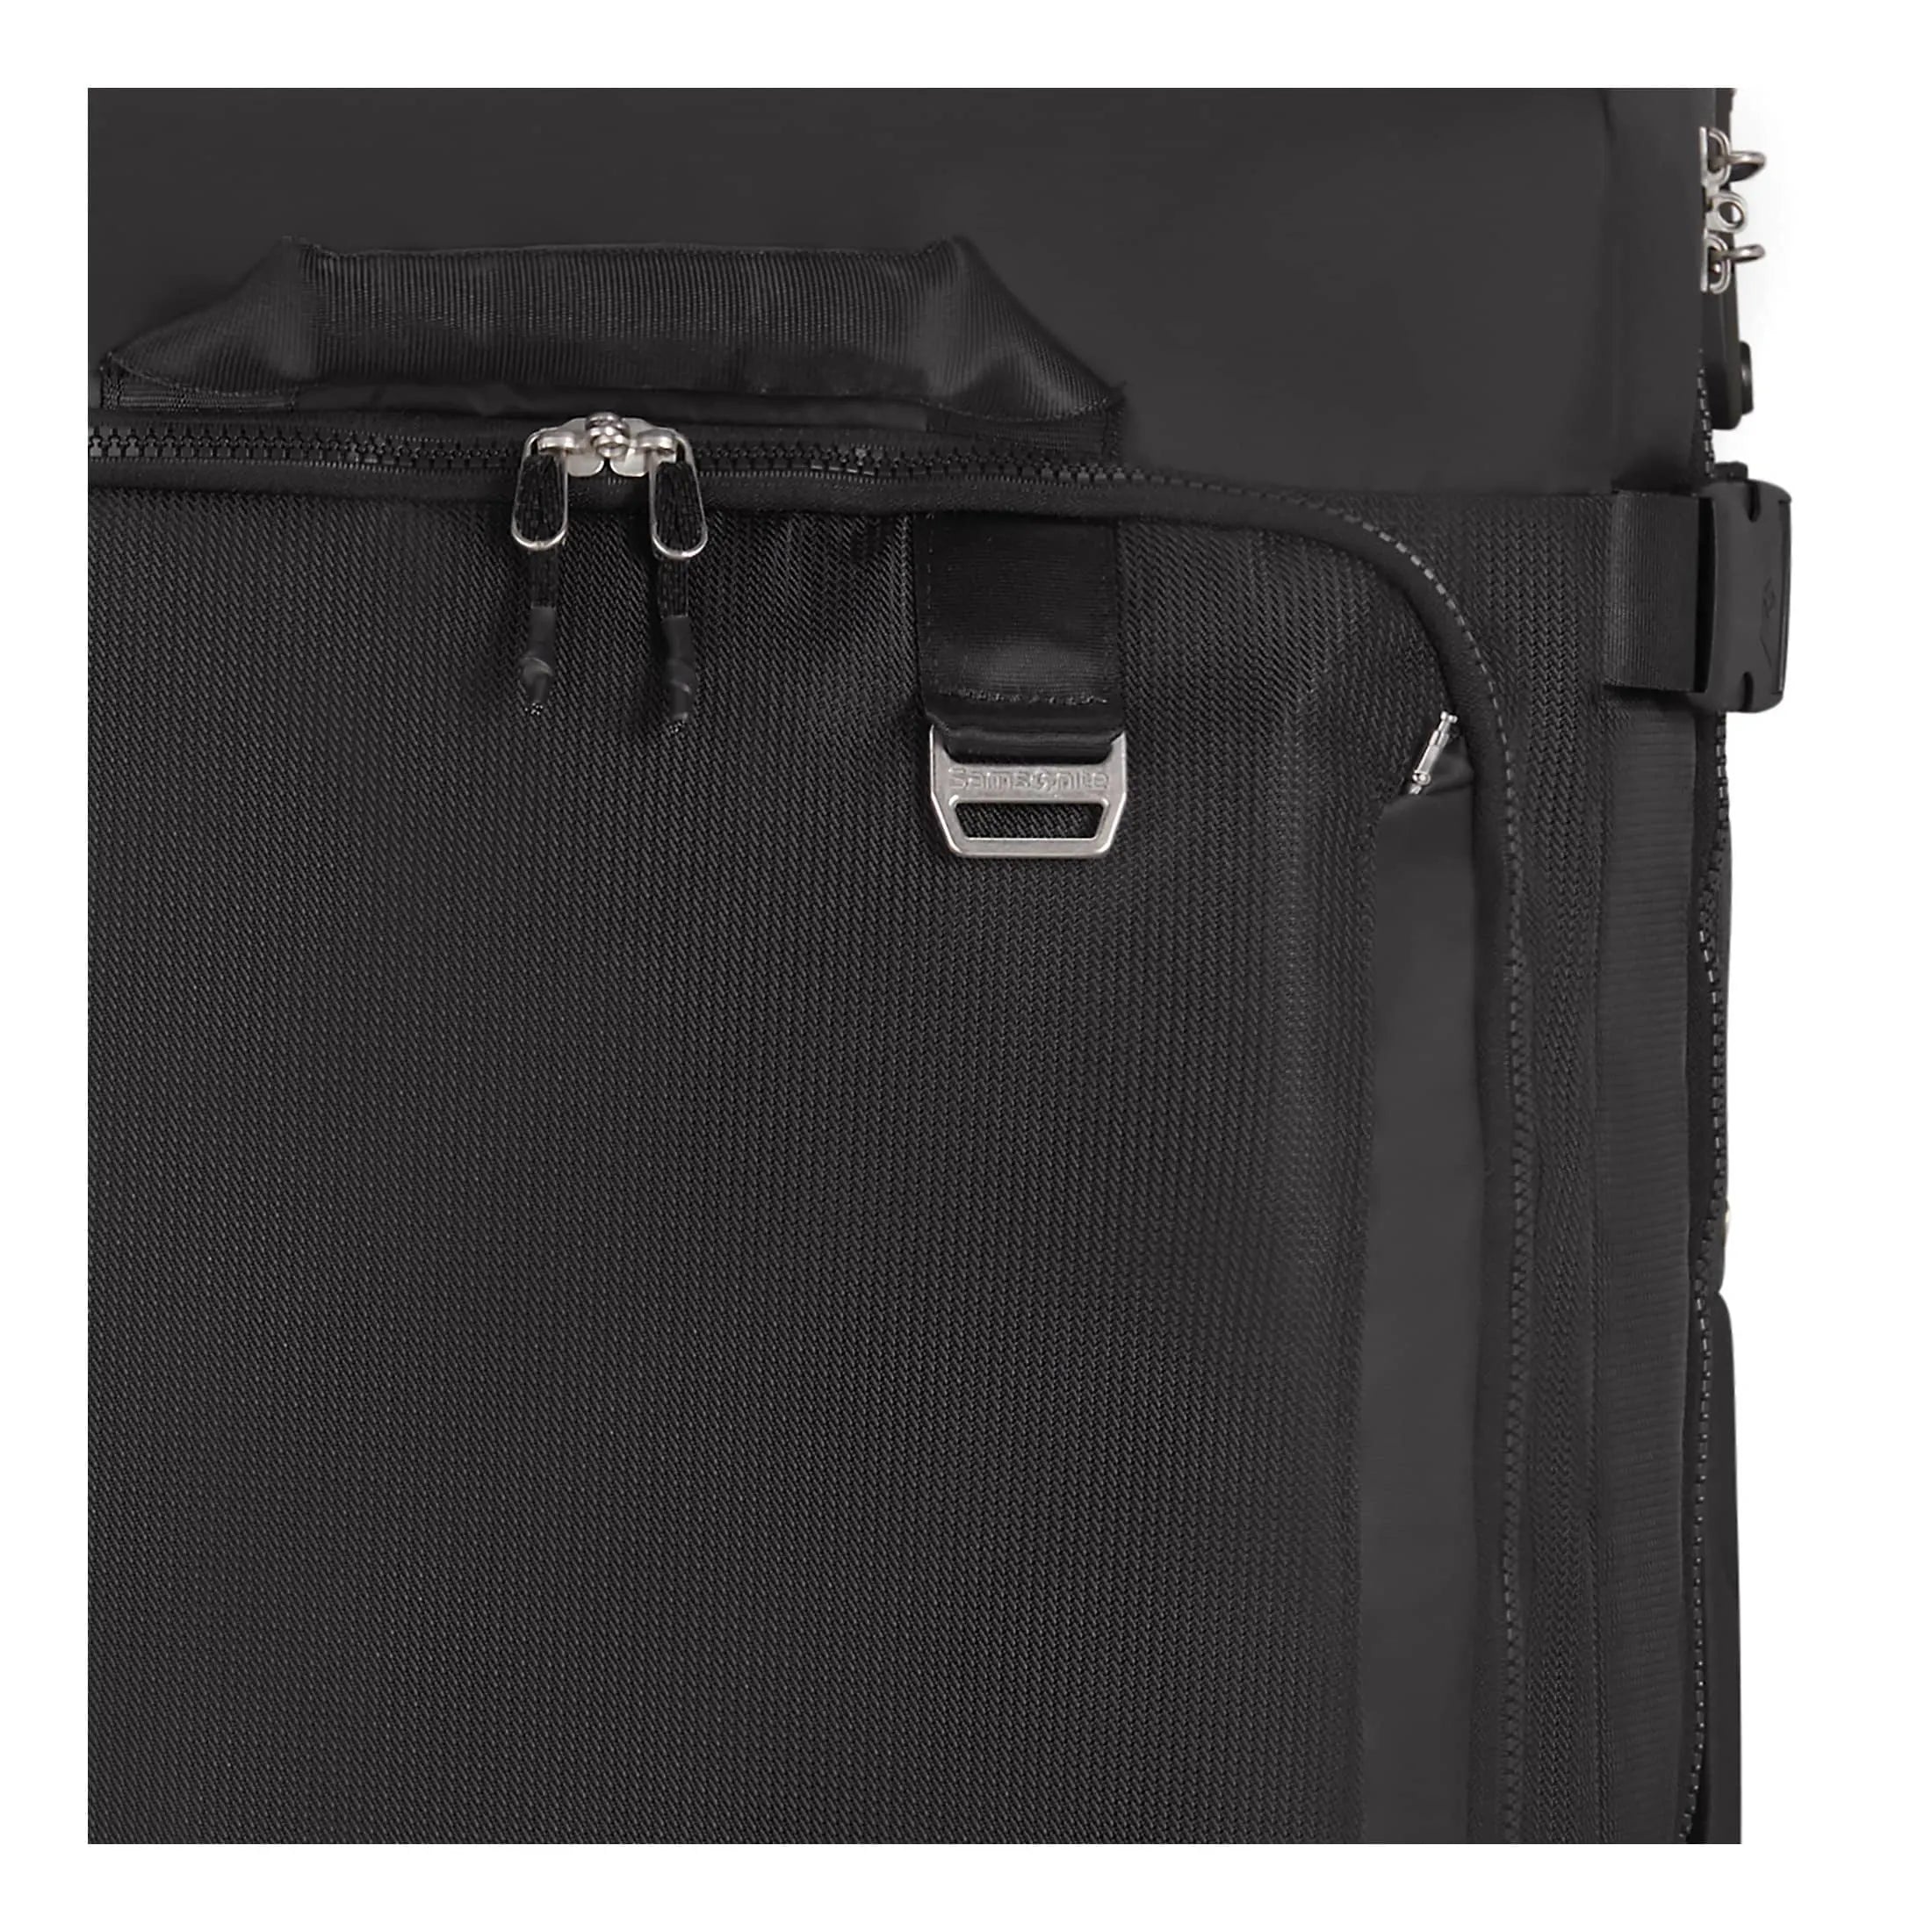 Samsonite Midtown Duffle Reisetasche mit Rollen 79 cm - Black